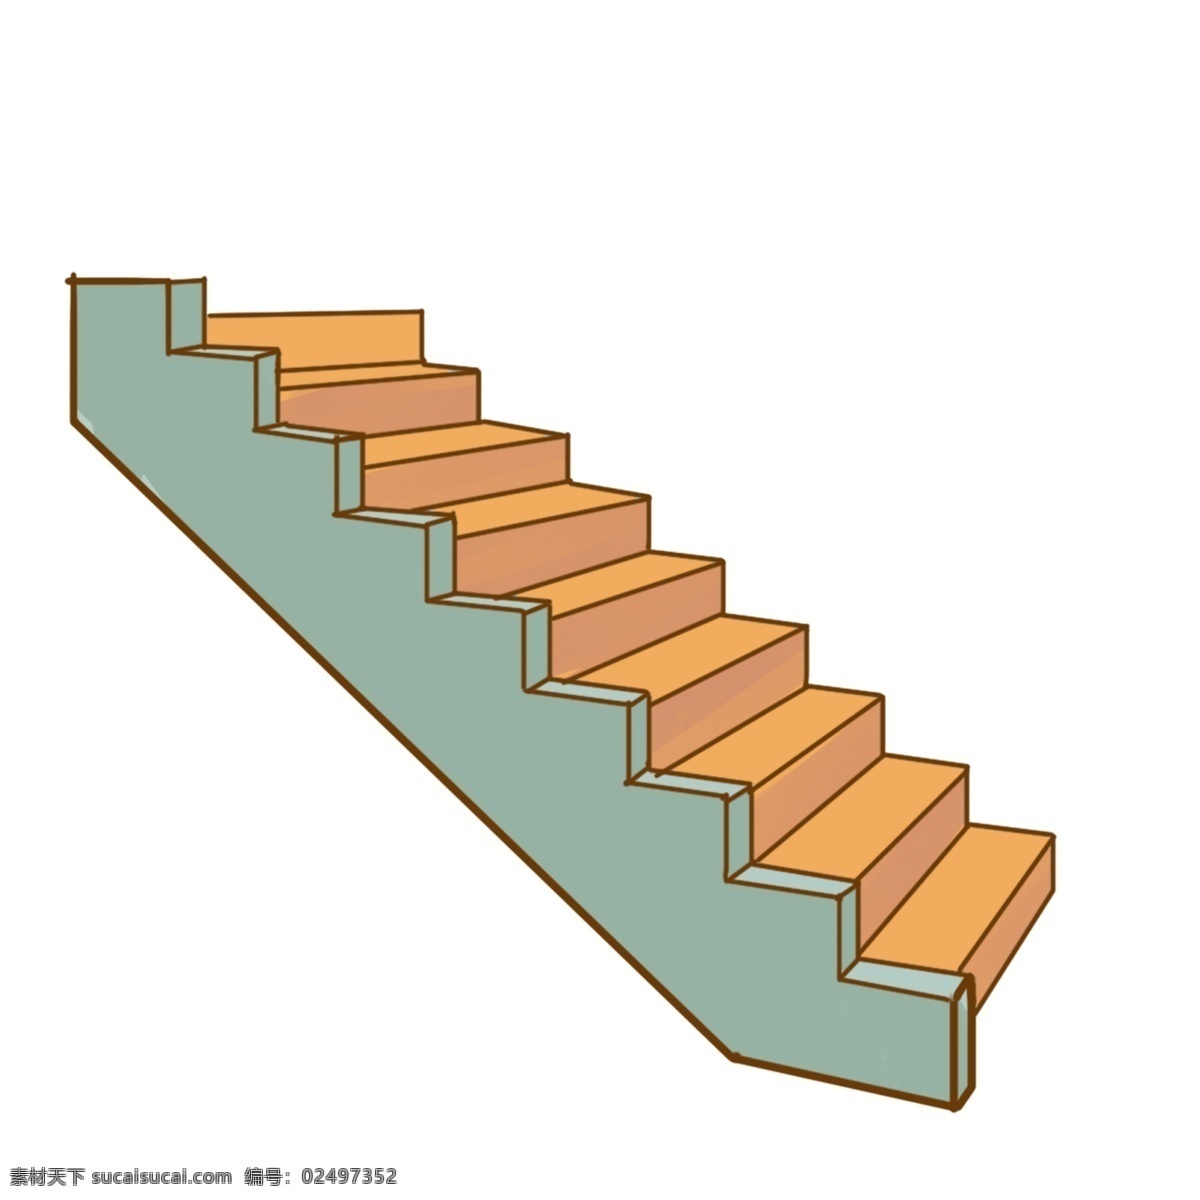 长方形 楼梯 图案 插图 黄色楼梯 精致的楼梯 登高帮手 卡通楼梯 建筑楼梯 偏平化楼梯 向上的楼梯